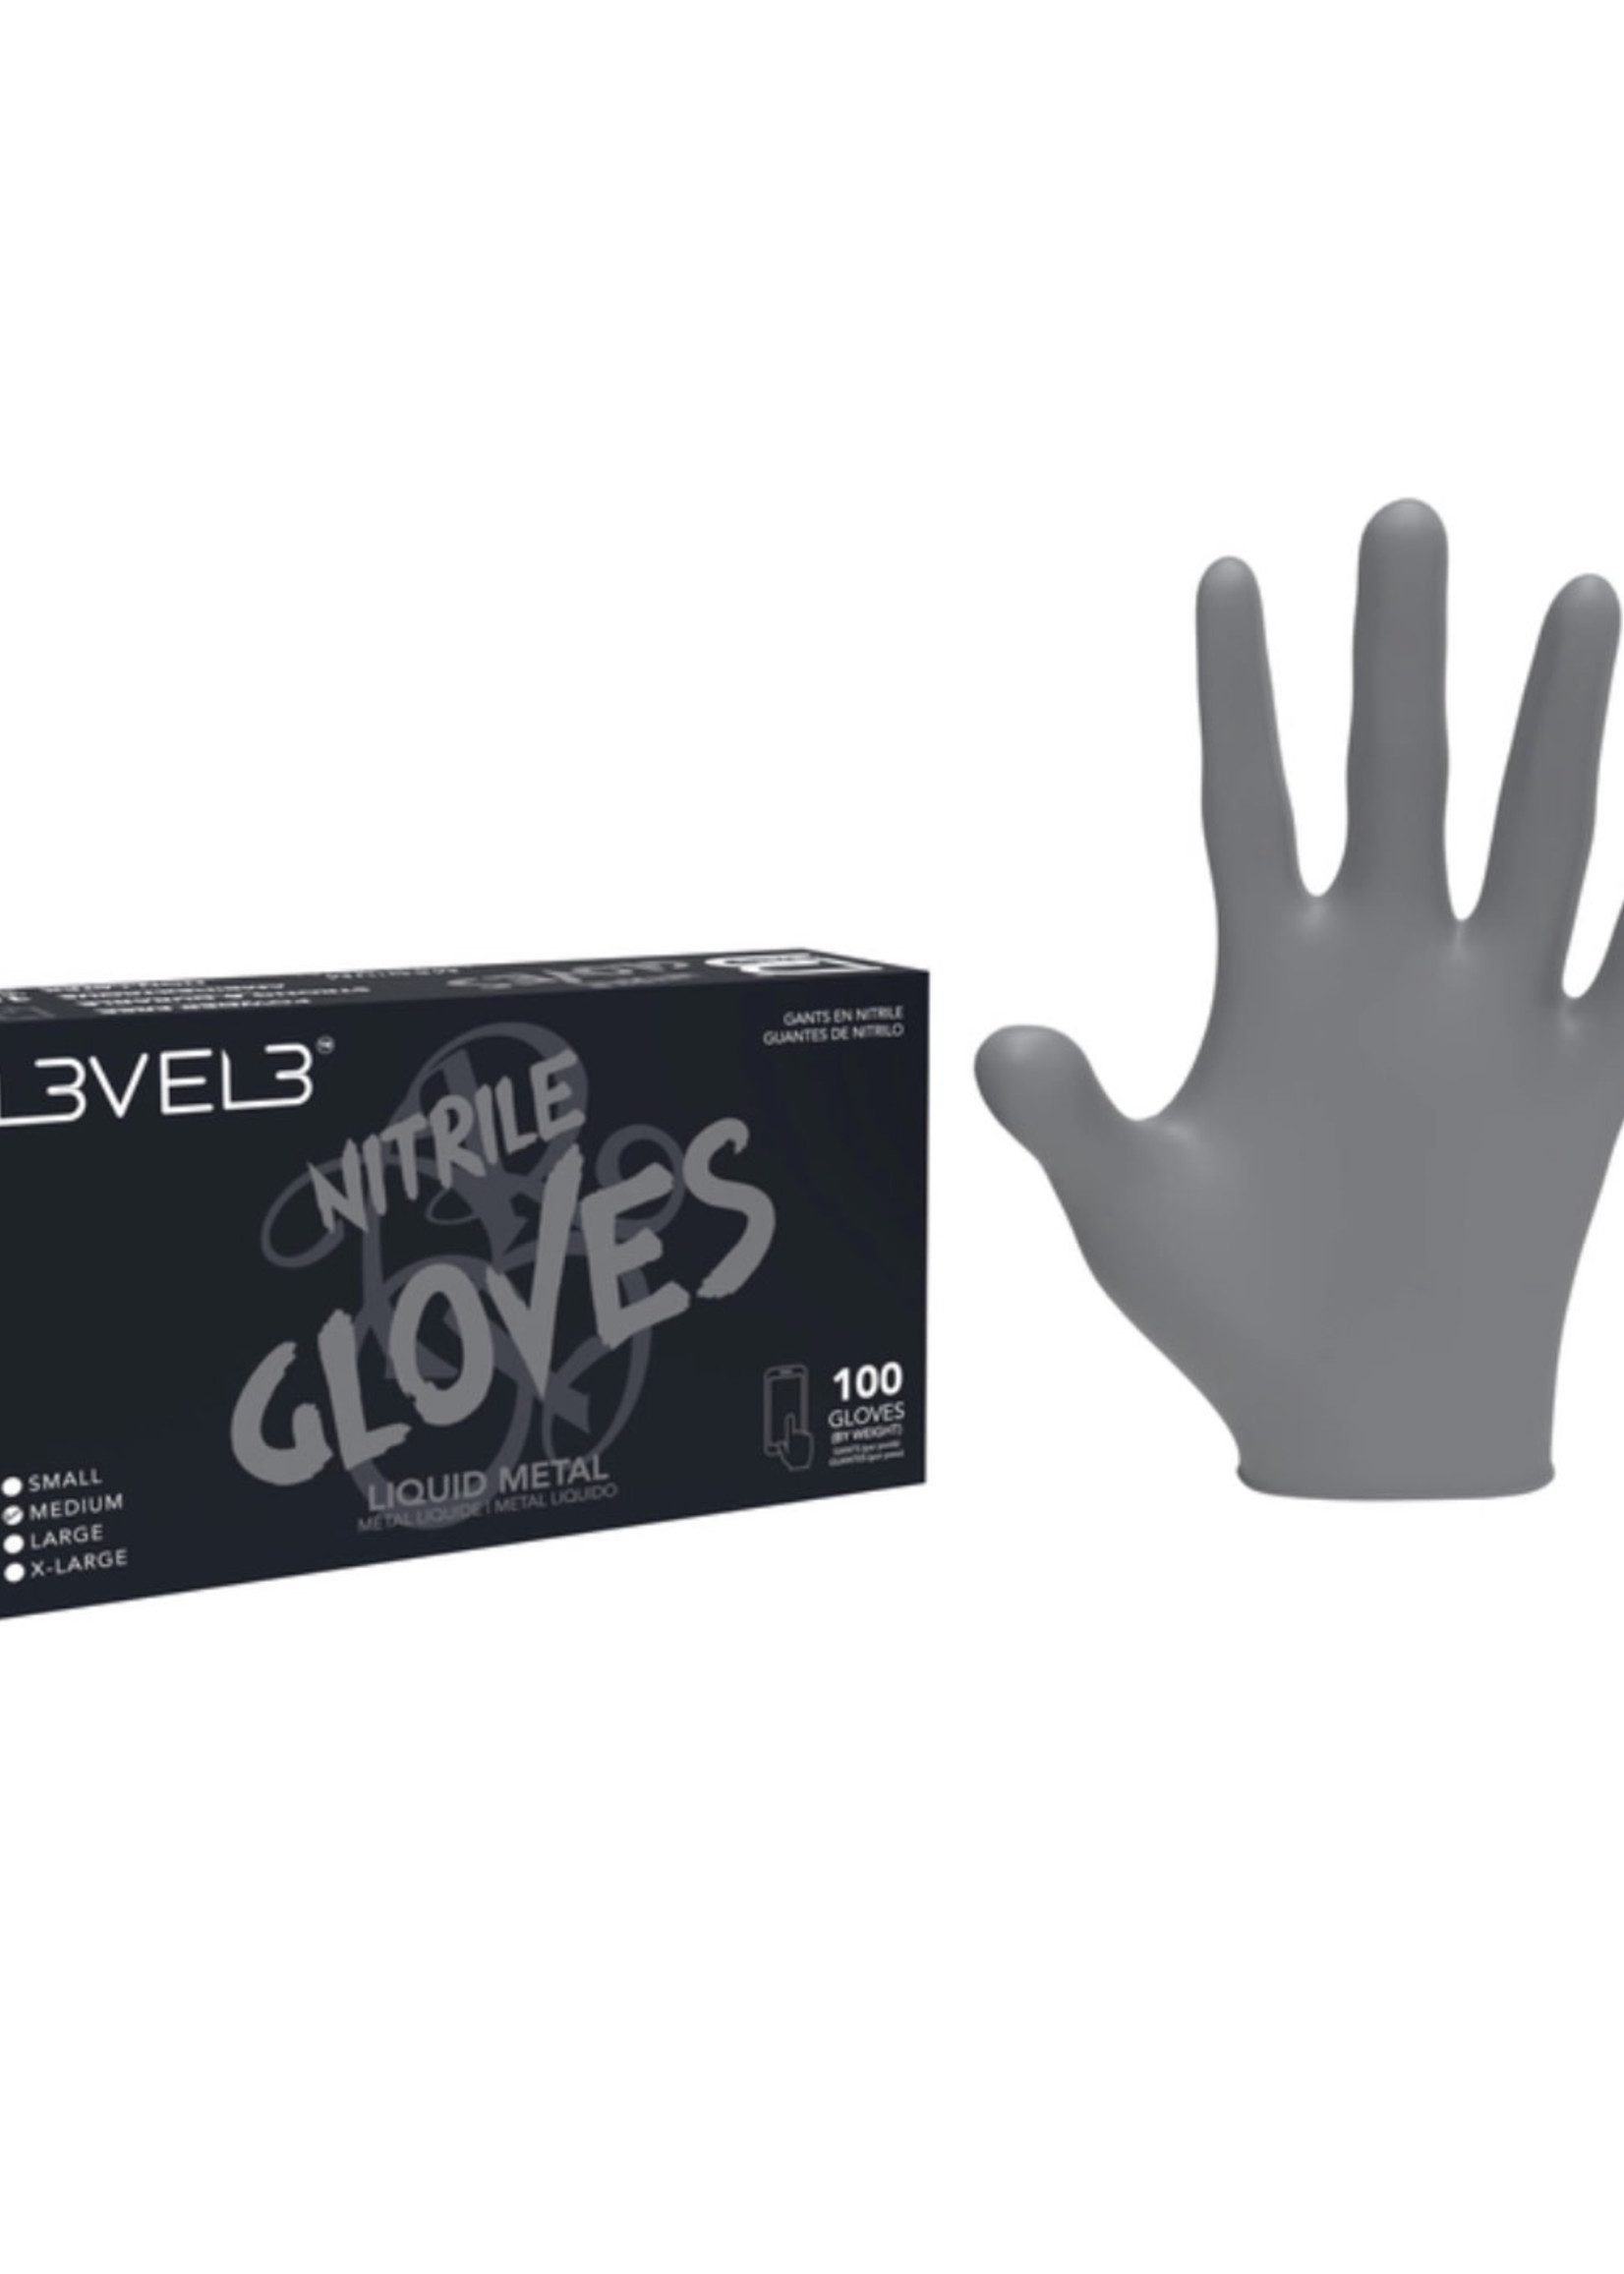 Level 3 L3VEL 3 Nitrile Gloves - 100 PK